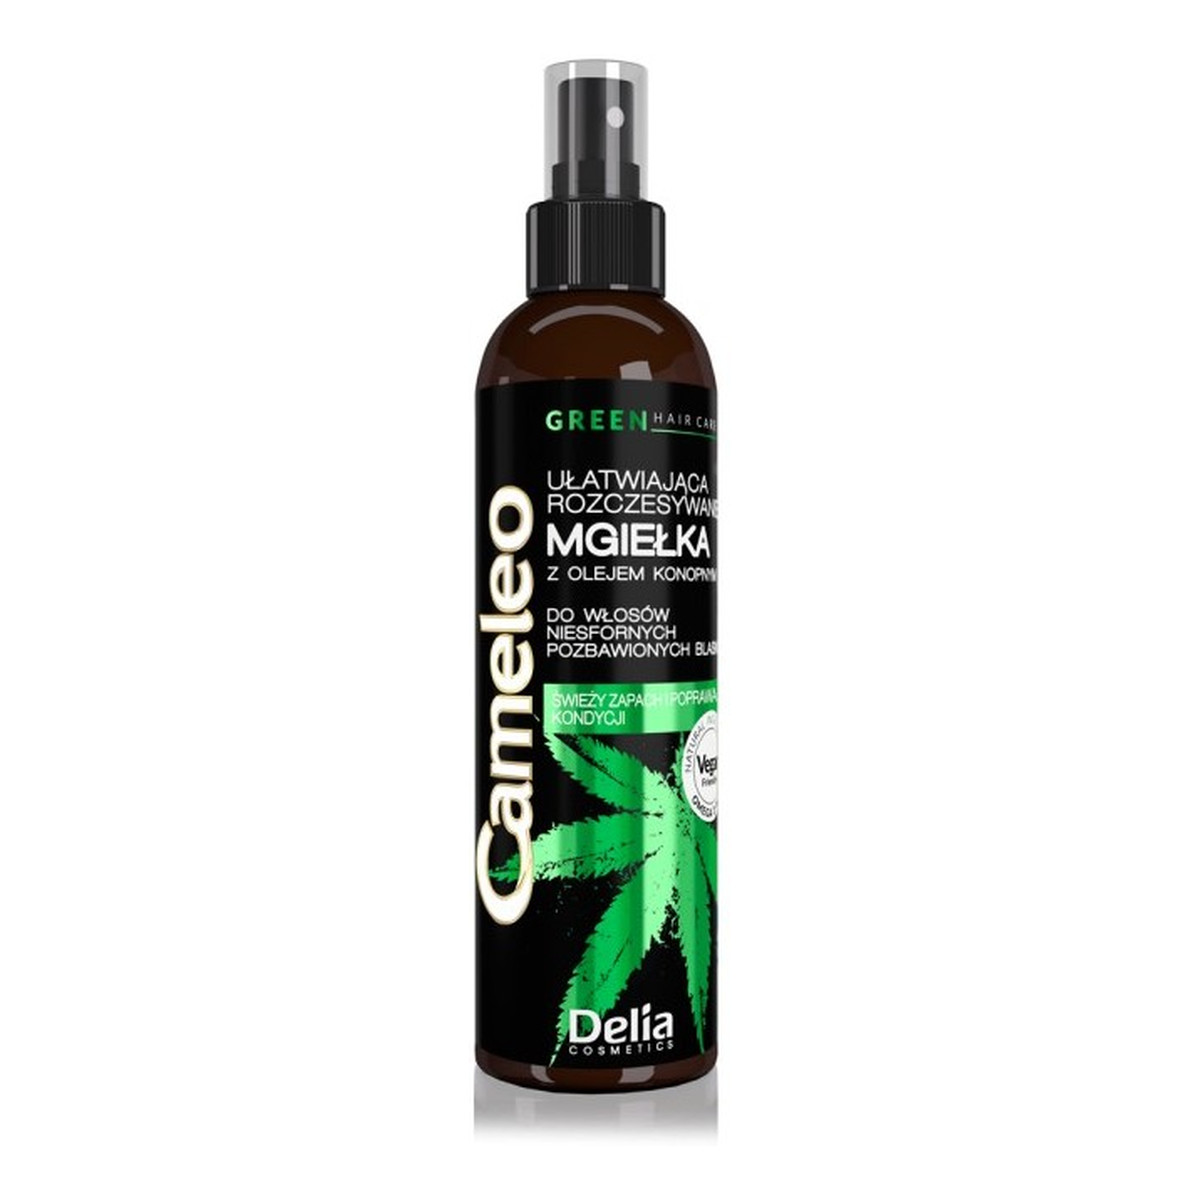 Cameleo Green Hair Care Ułatwiająca Rozczesywanie Mgiełka Z Olejem Konopnym Do Włosów Niesfornych Pozbawionych Blasku 200ml